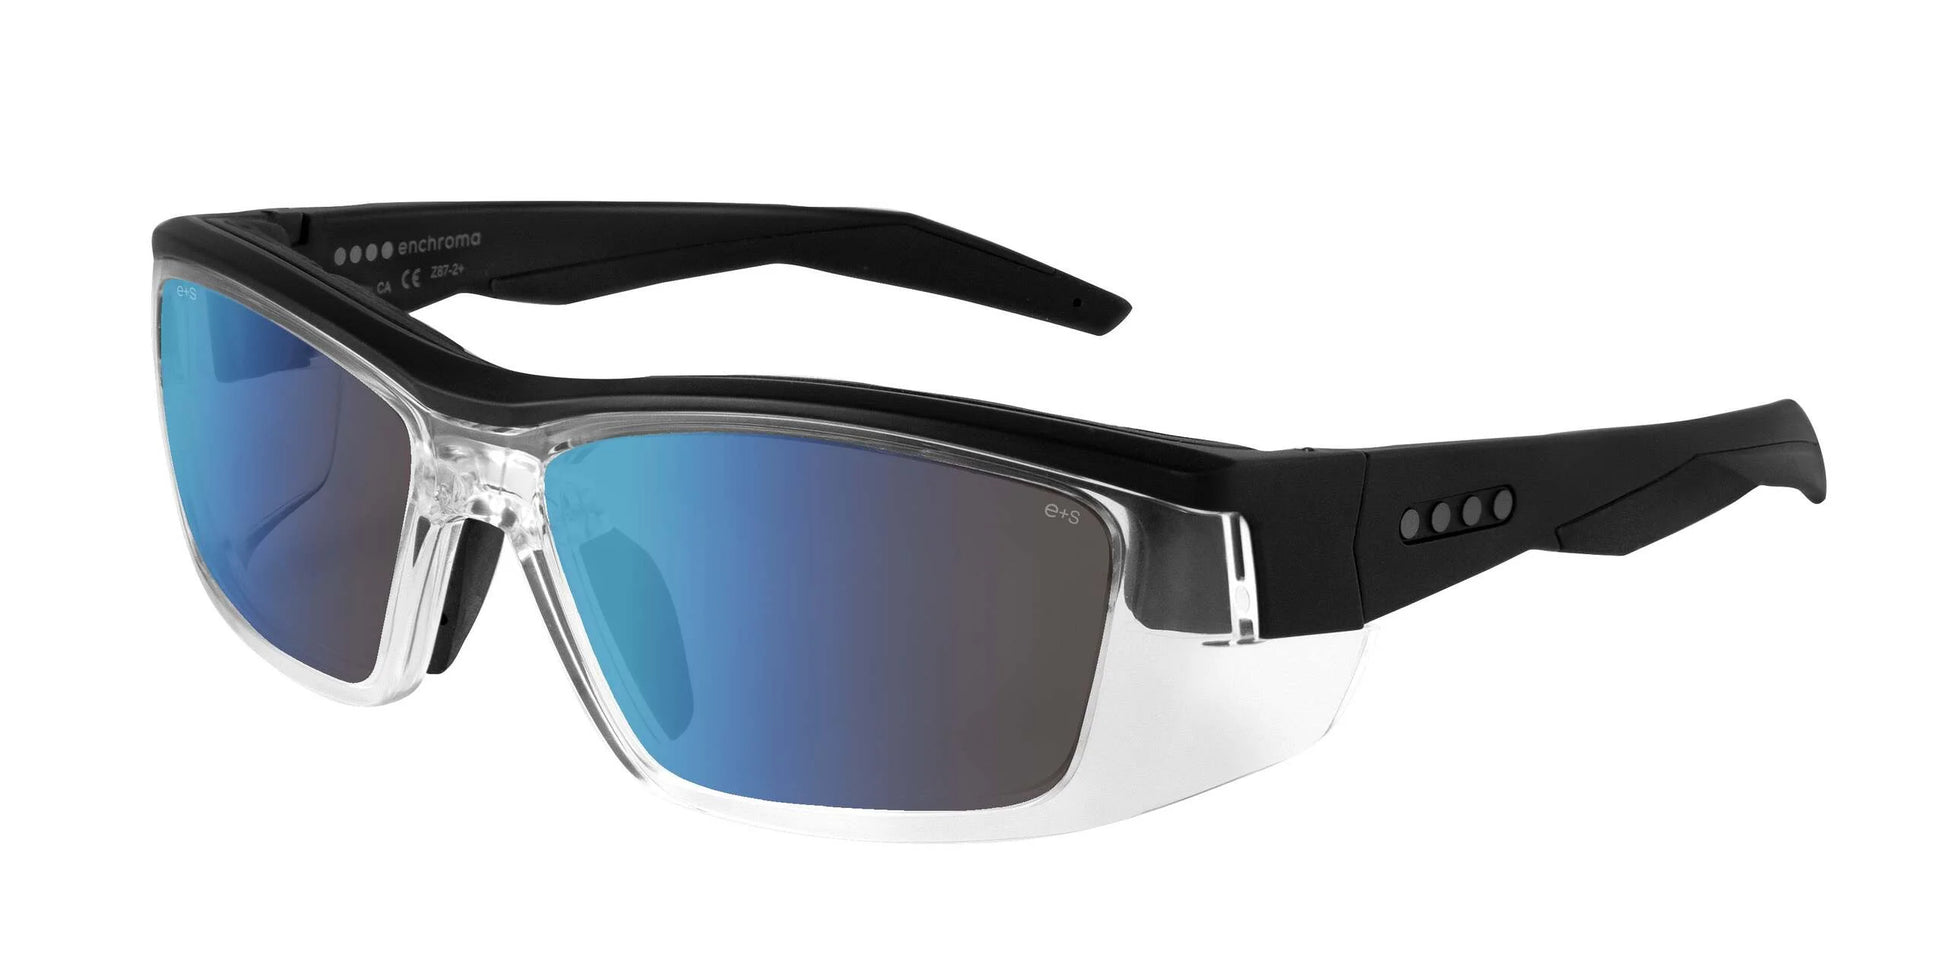 EnChroma Martinez CX Safety Glasses Black / Outdoor Protan Polarized